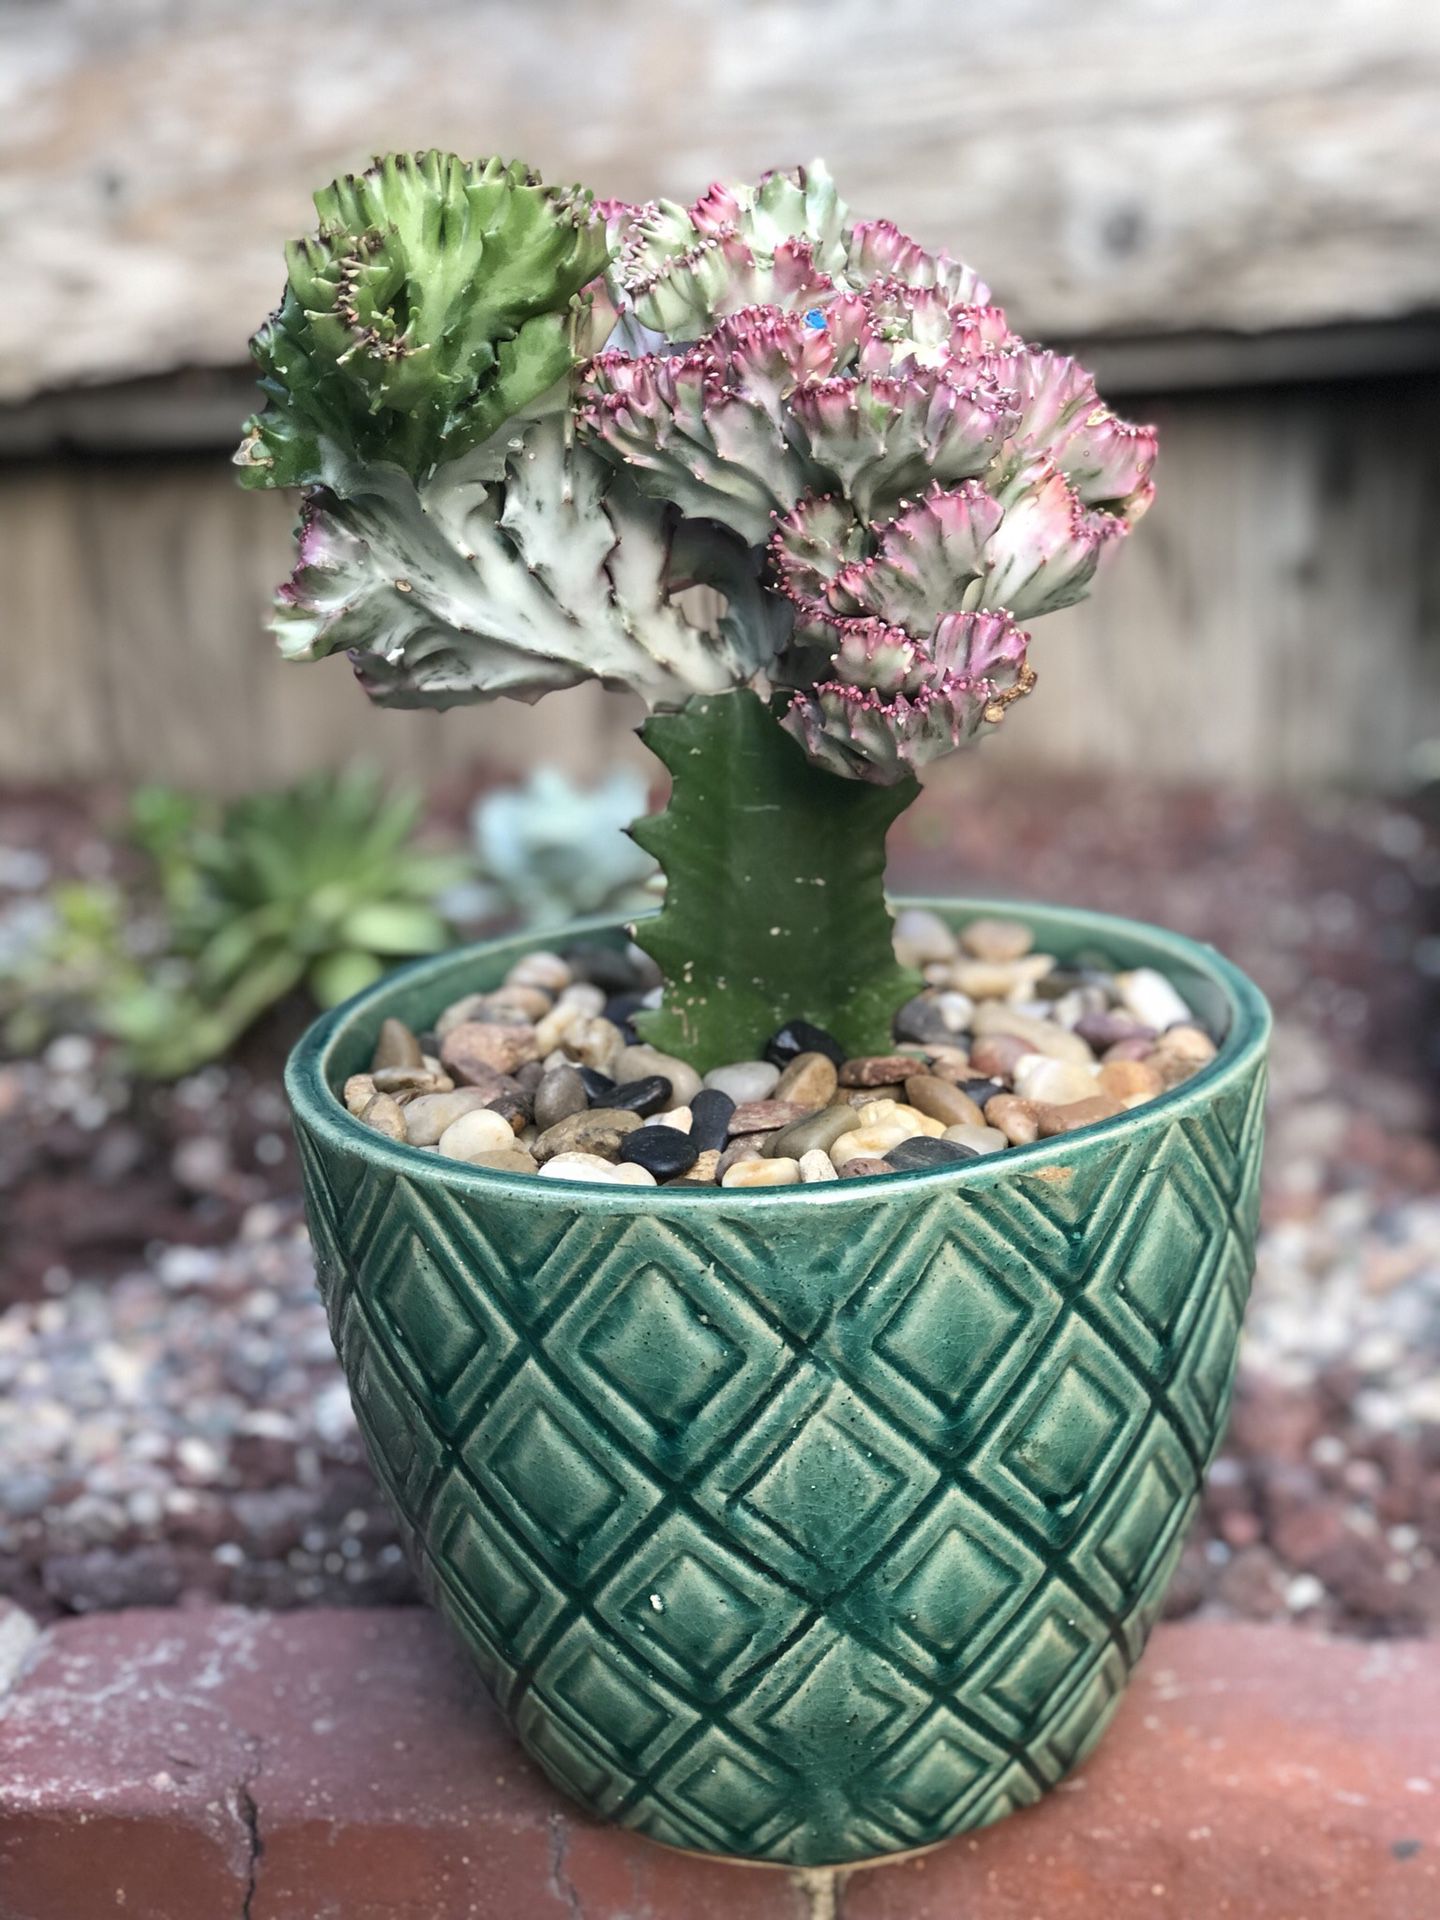 Succulent cactus